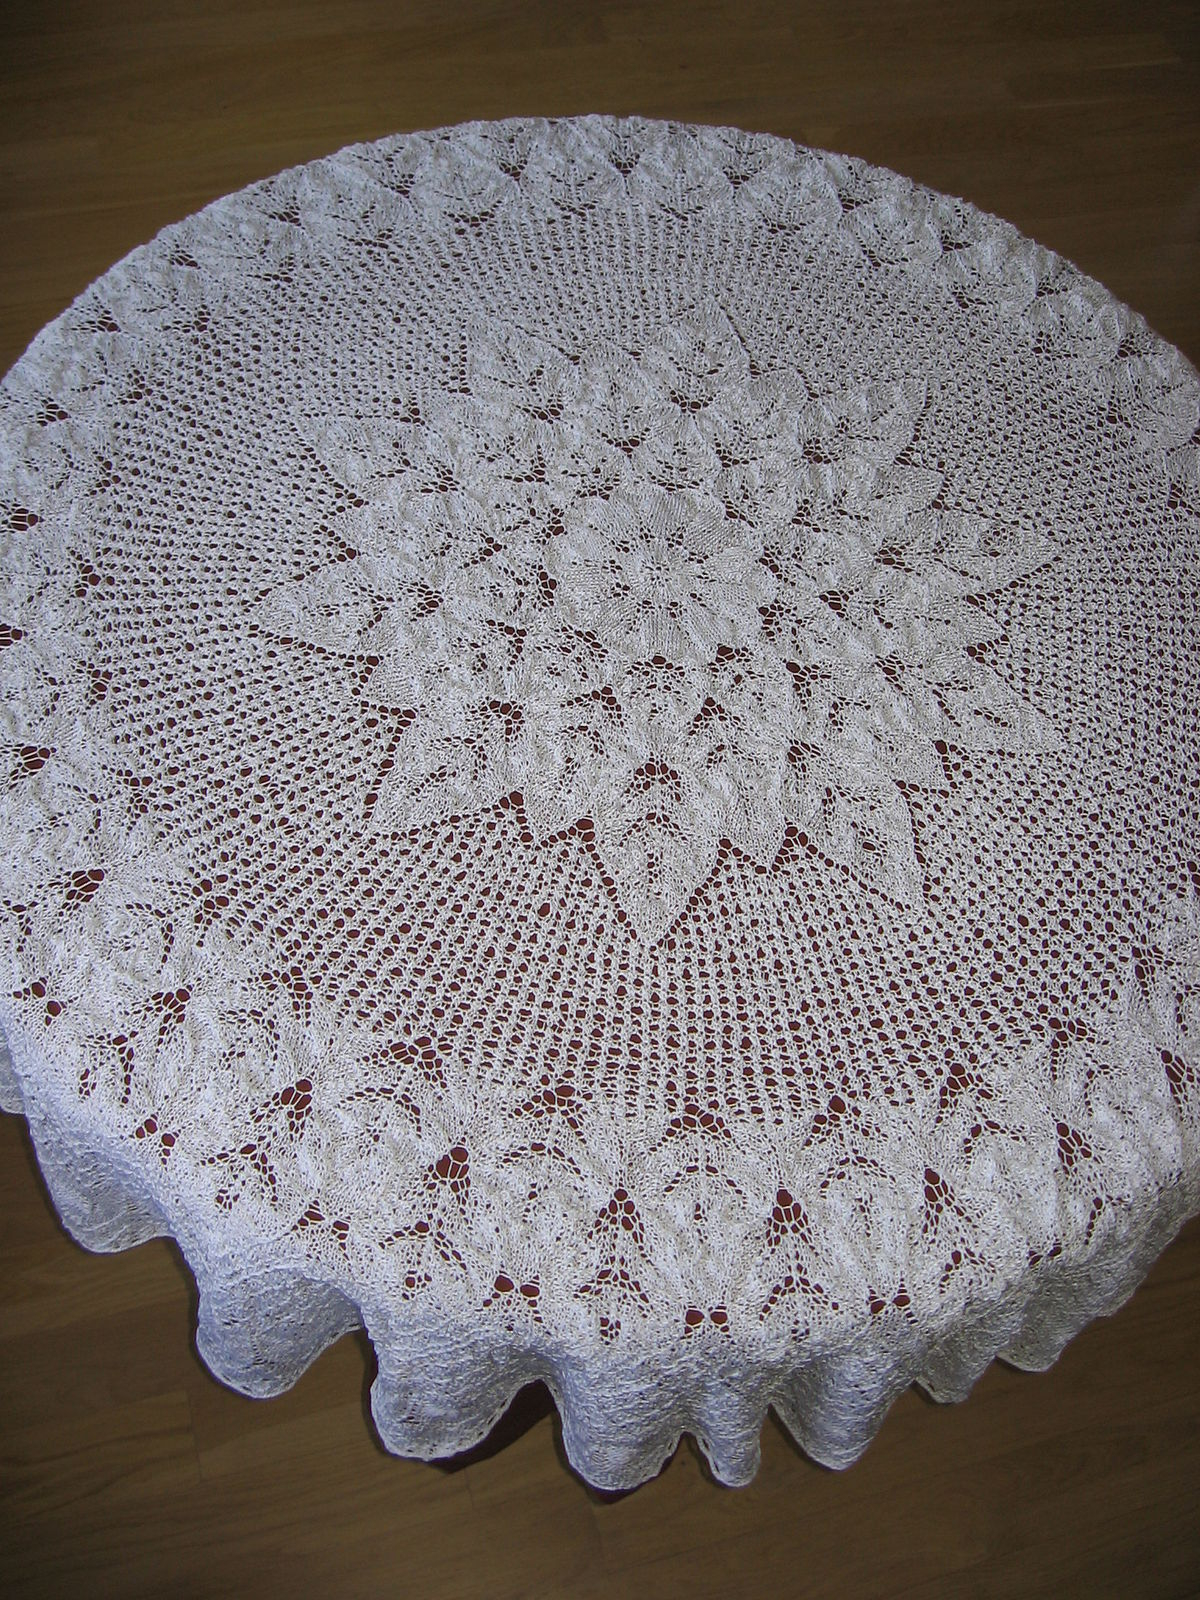 Knitting Patterns Designs Lace Knitting Wikipedia